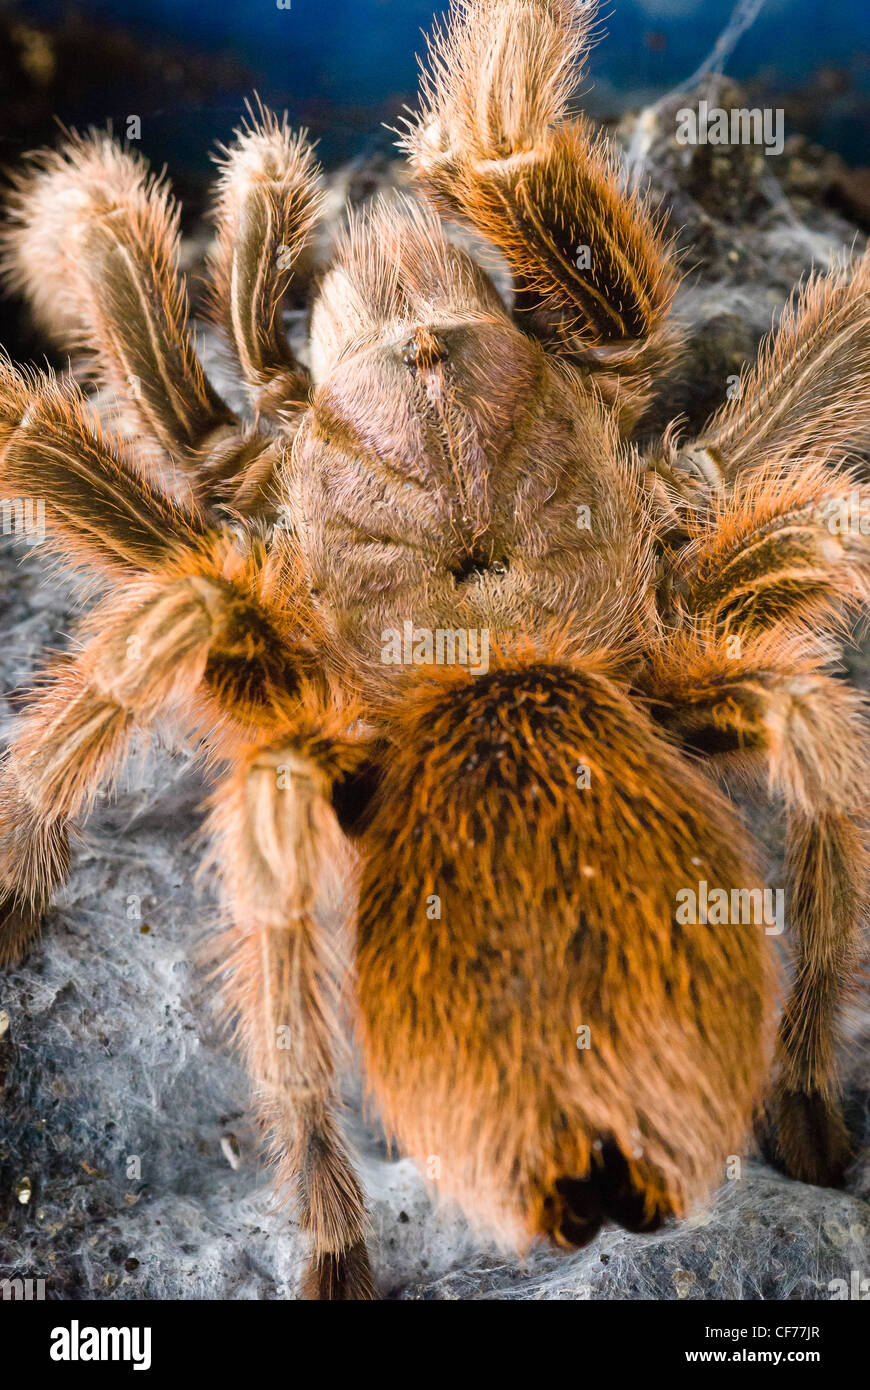 A Chile Rose tarantula Stock Photo